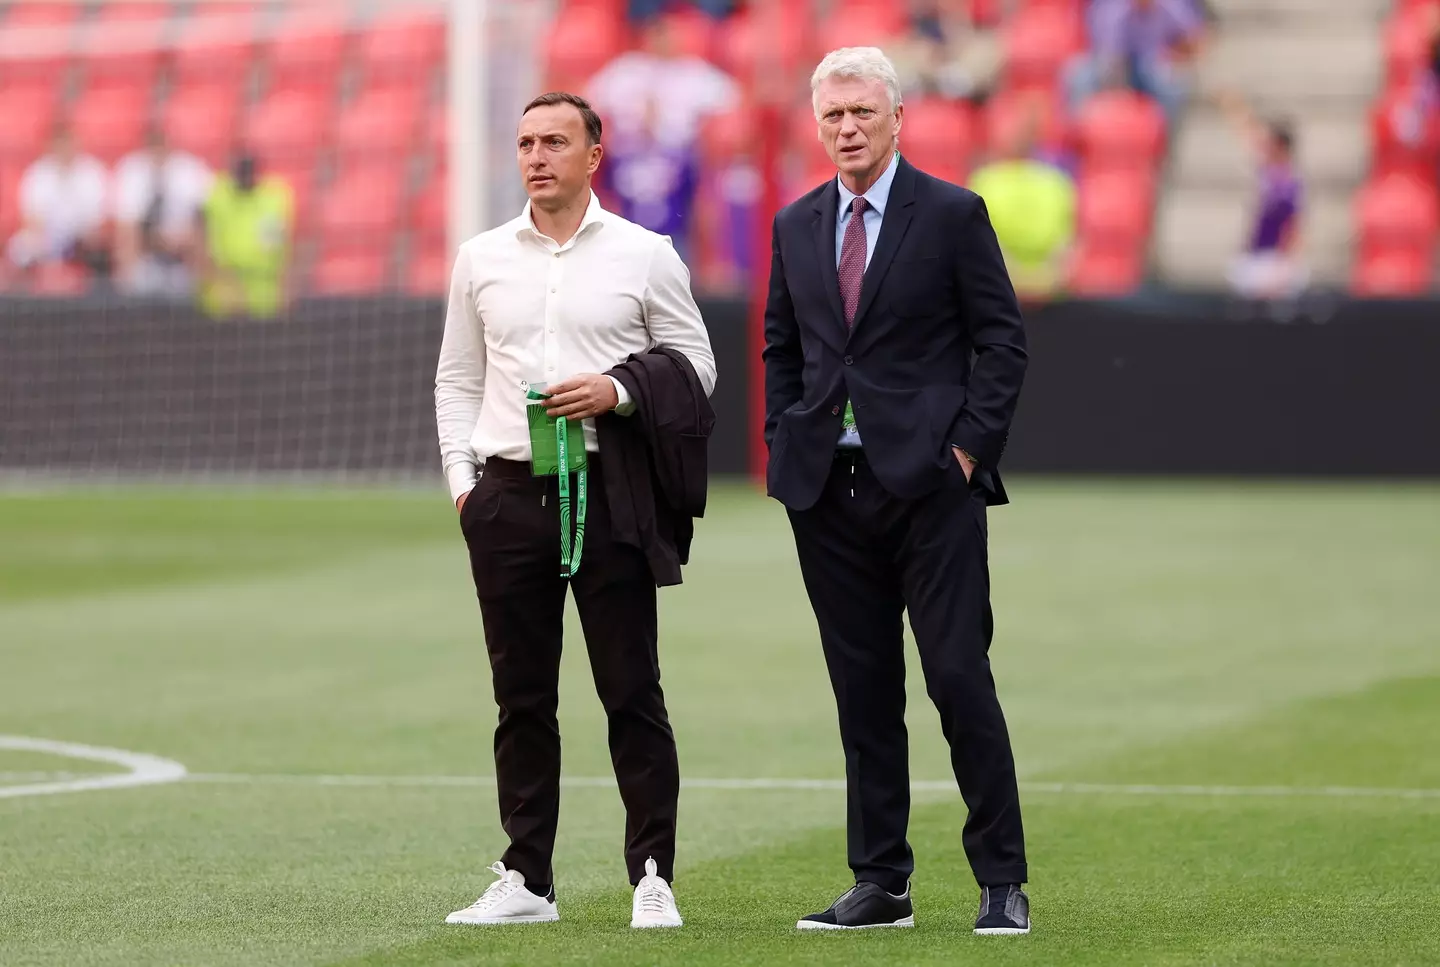 Noble alongside West Ham United manager David Moyes. (Image